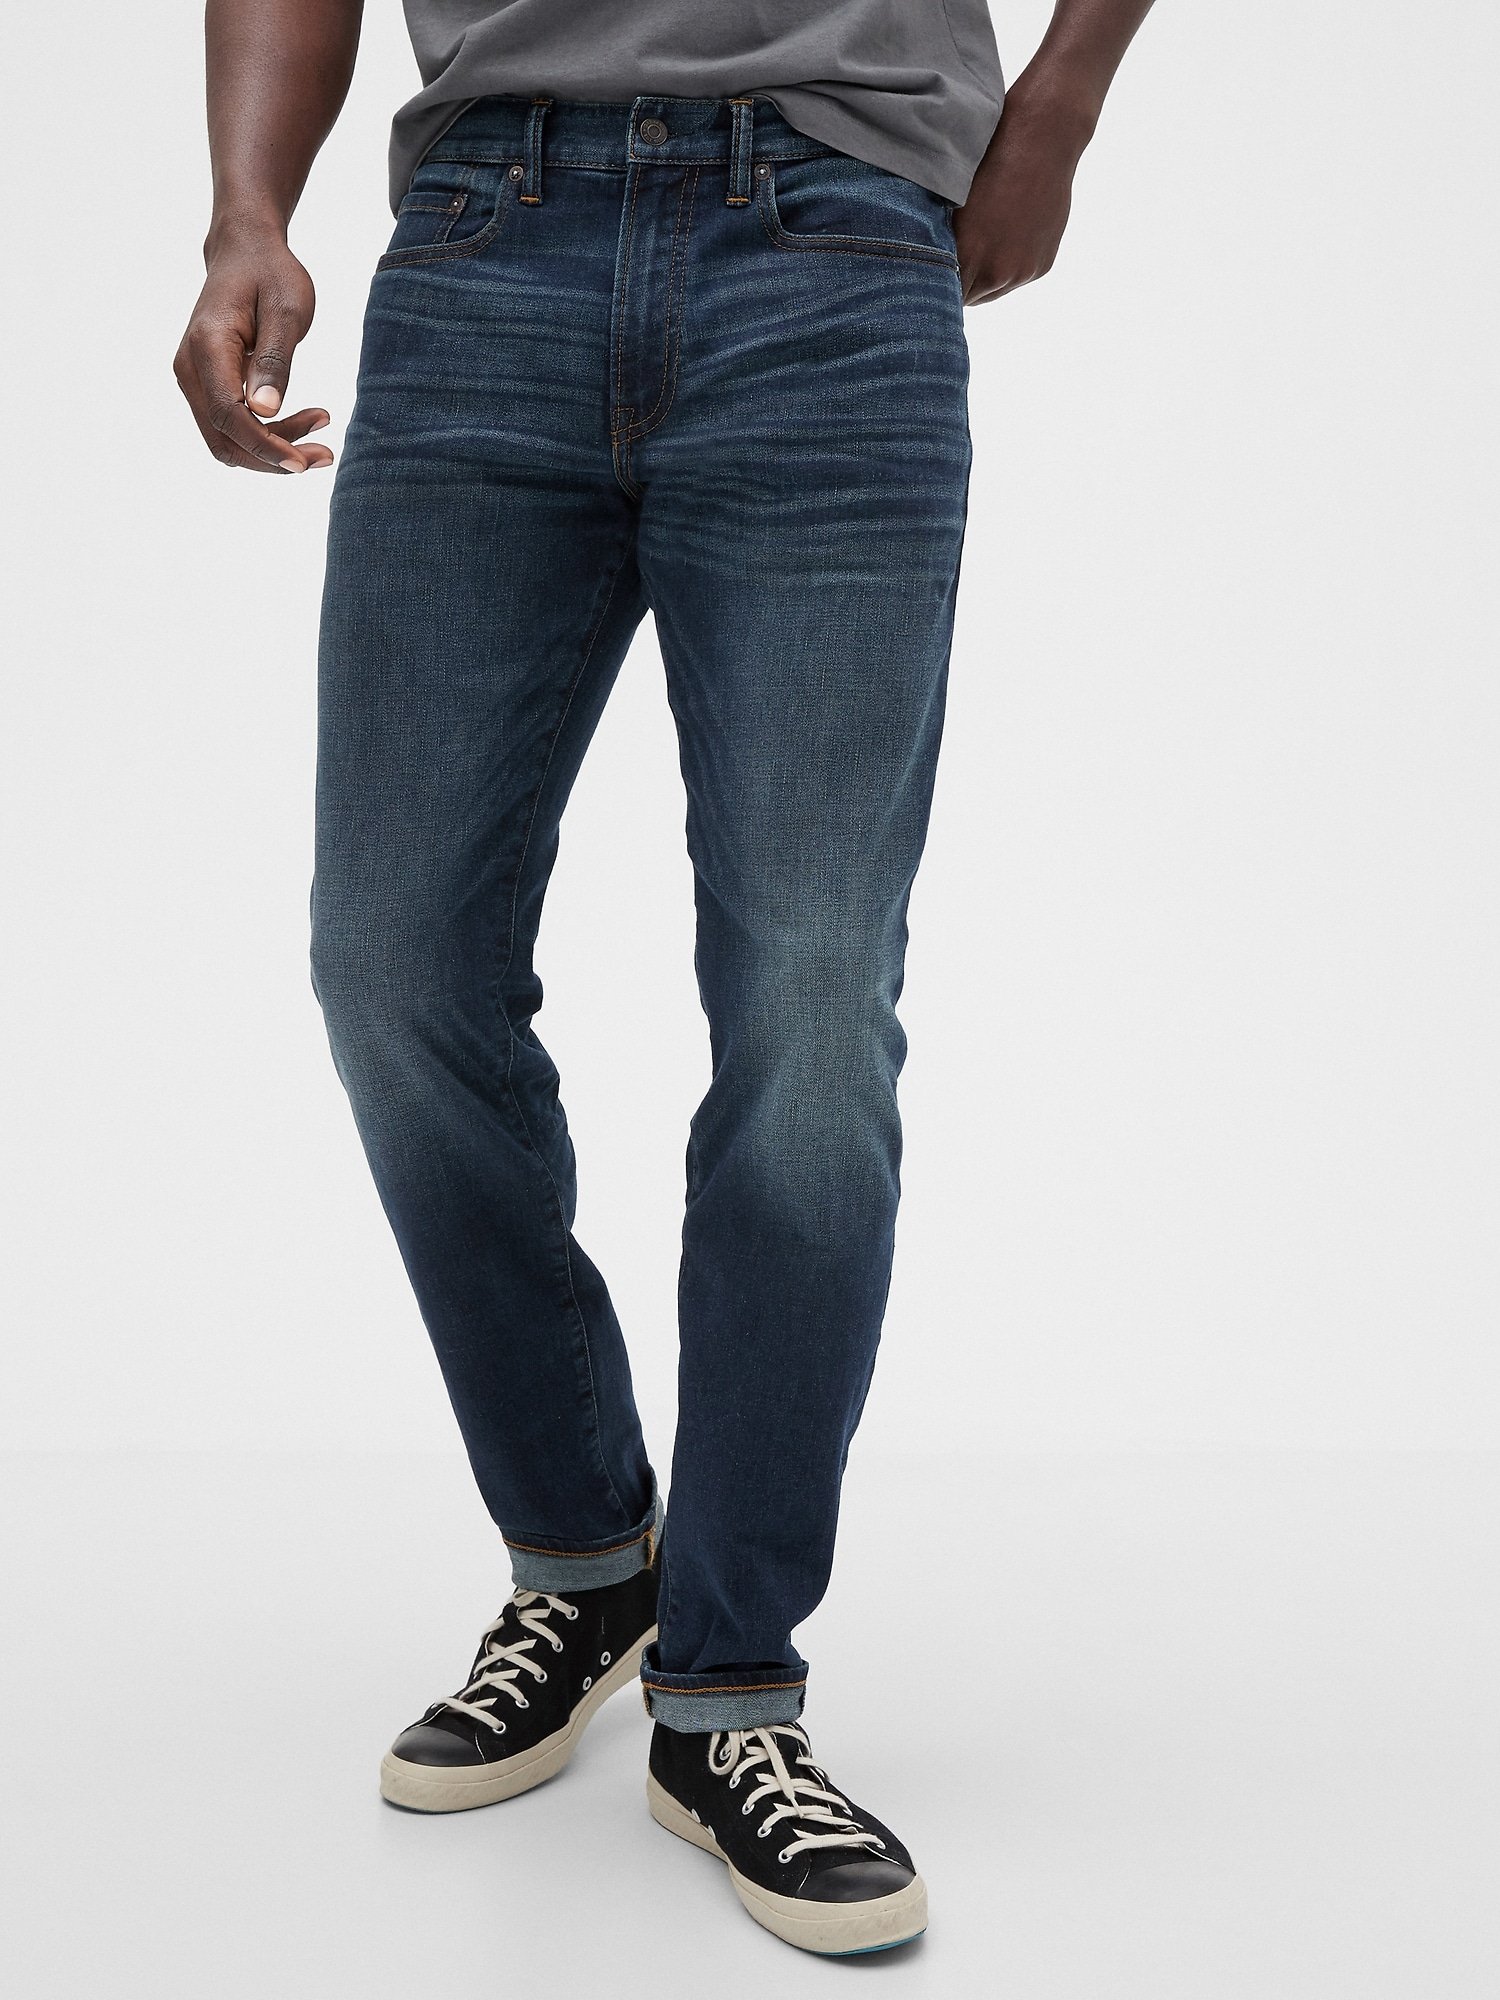 Gap Flex Slim Jean Pantolon product image